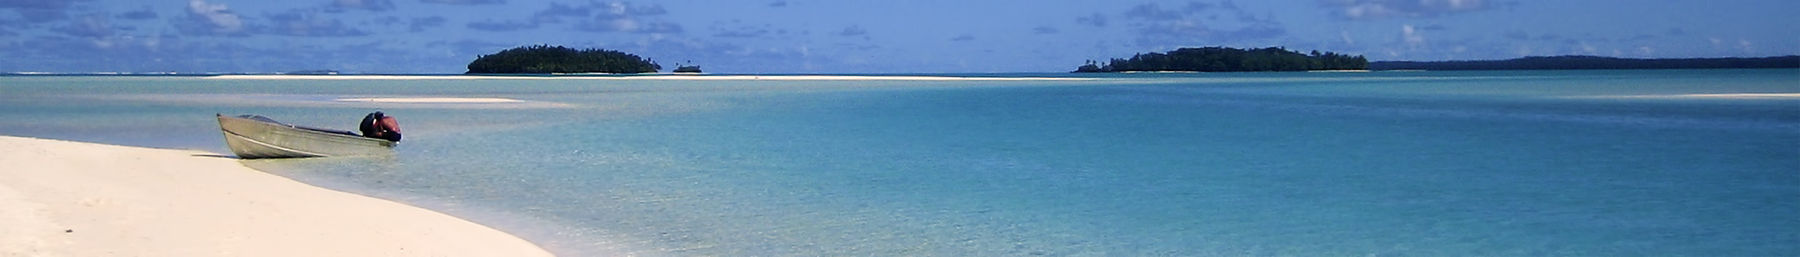 Bãi biển Quần đảo Cook banner.jpg